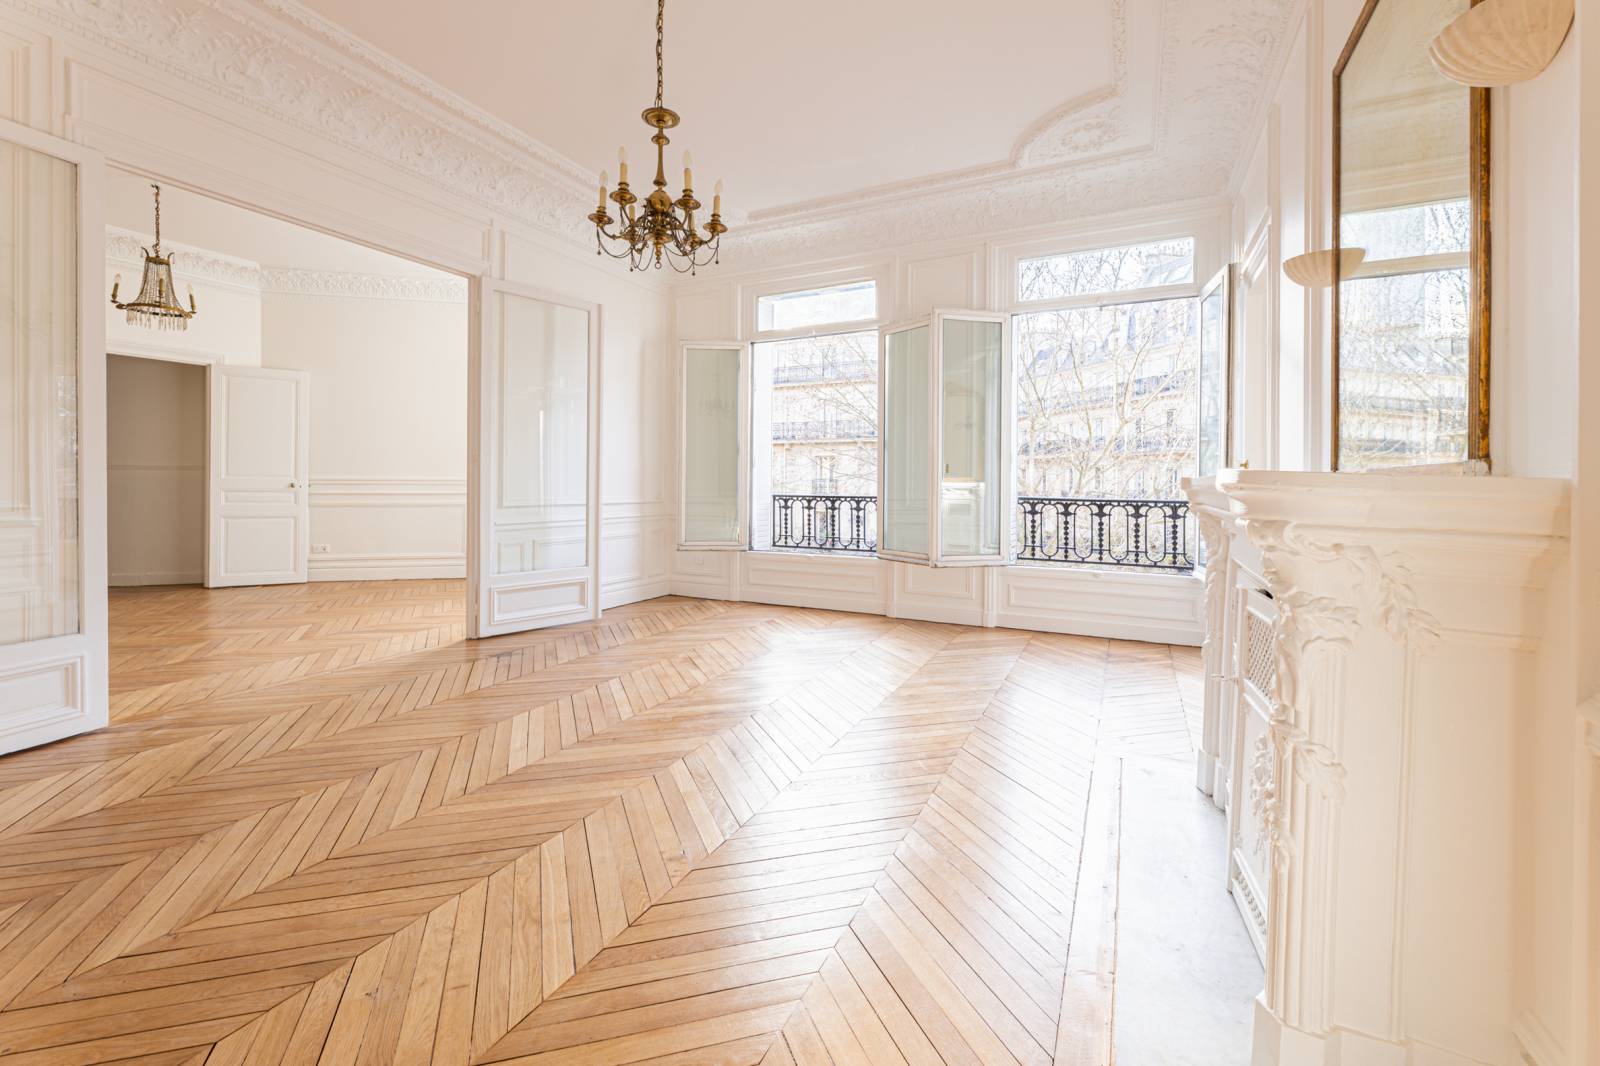 Appartement familial de prestige avec 4 chambres situé au 3ème étage avec ascenseur - Paris 6ème : Boulevard Raspail | quartier Notre-Dame des Champs  